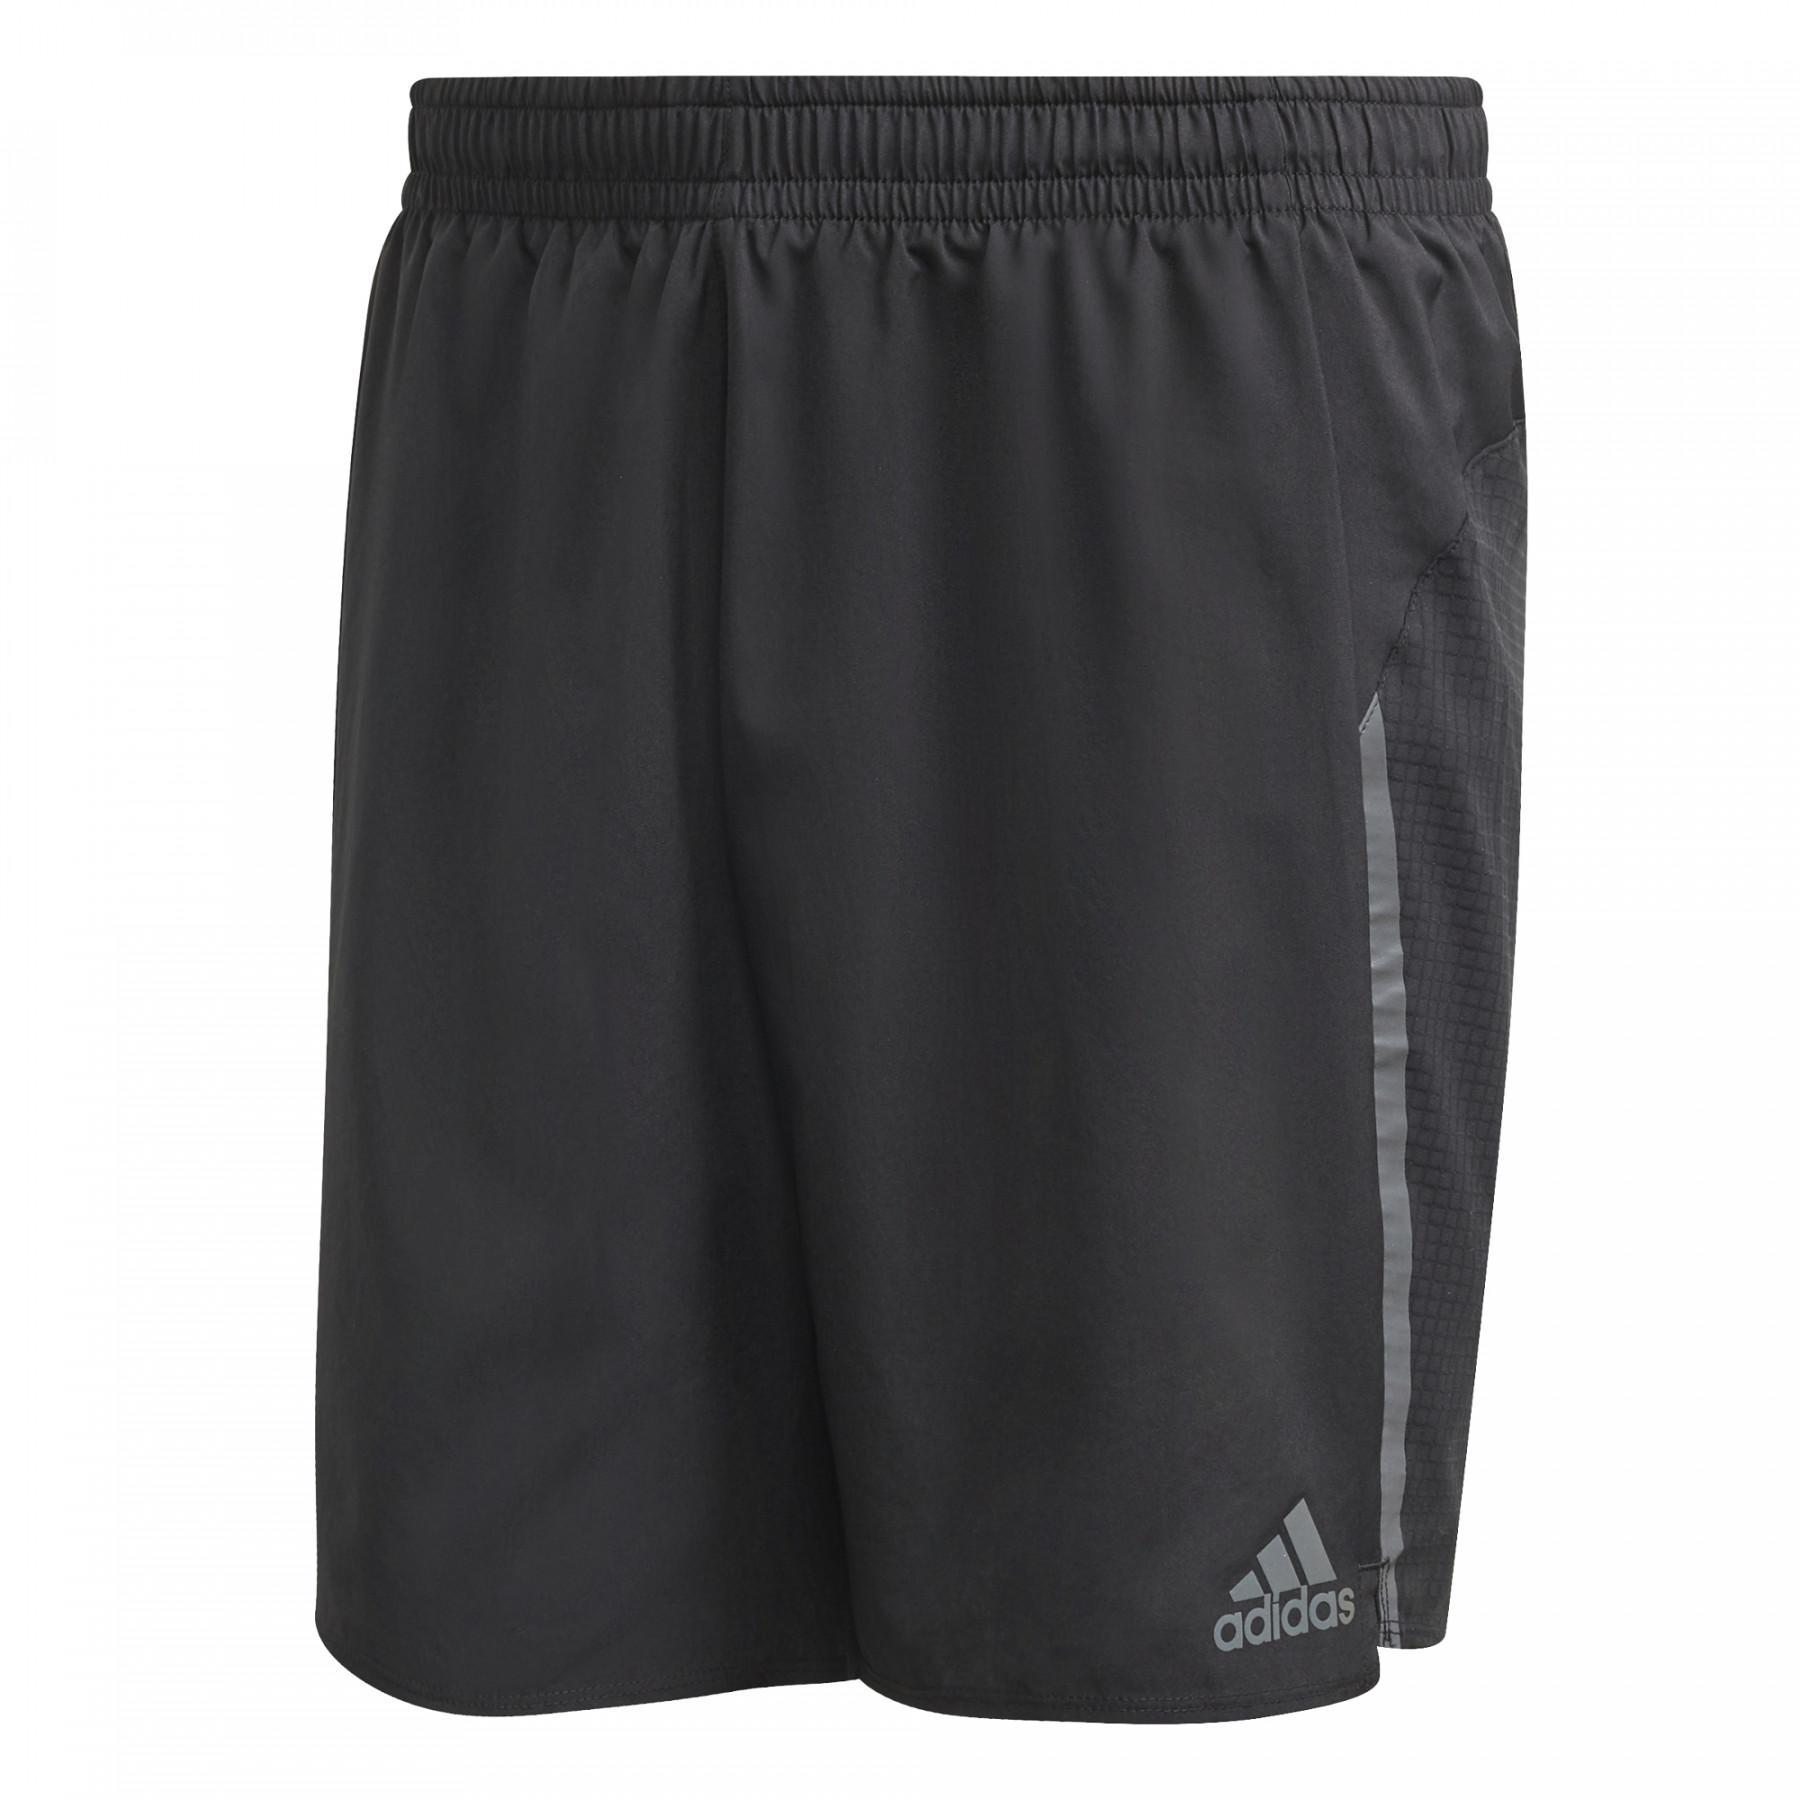 adidasaturday basic shorts